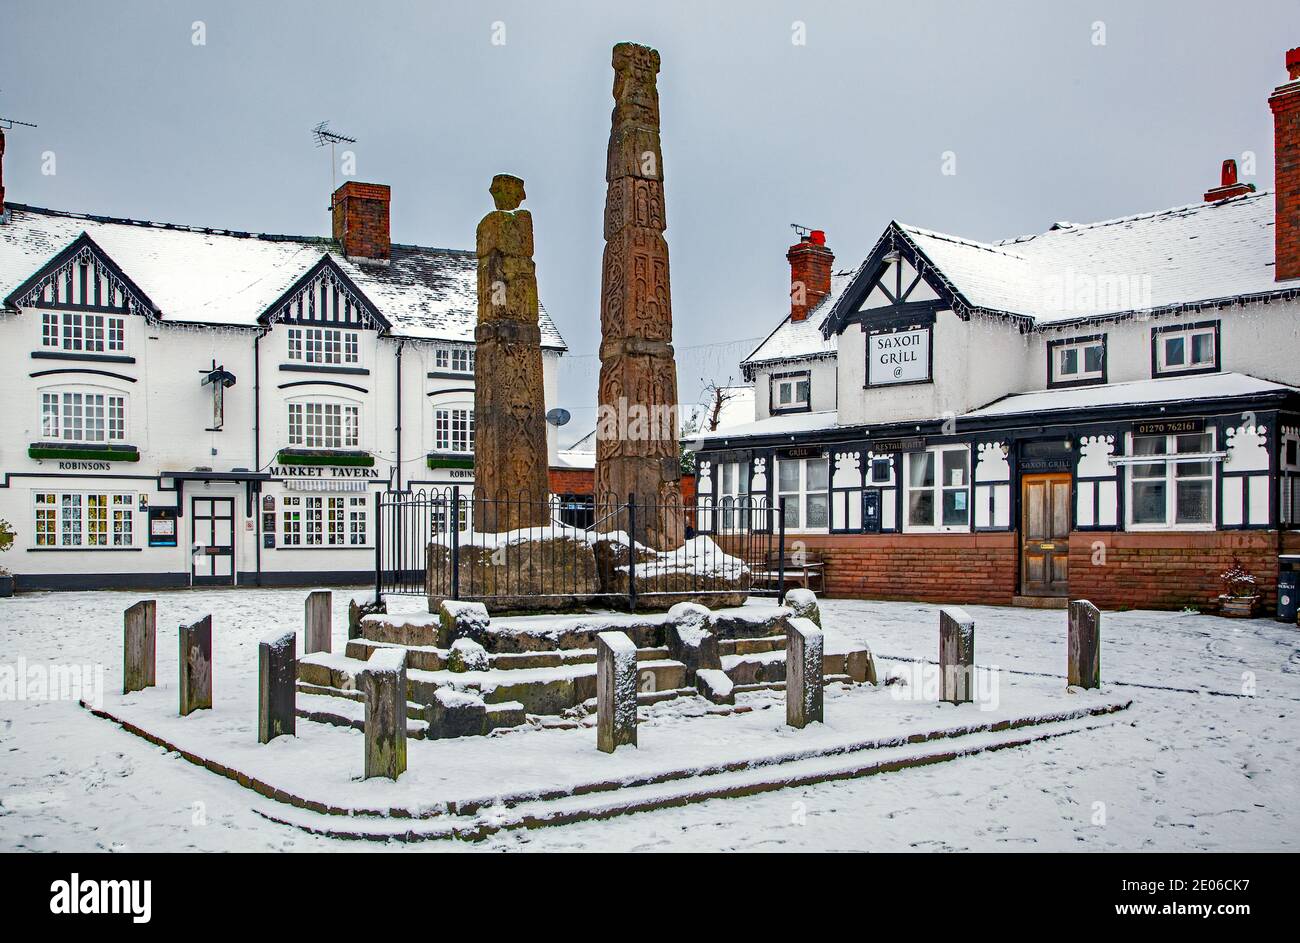 Alte sächsische Steinkreuze im gepflasterten schneebedeckten Markt Platz im Winter bei Sandbach Cheshire vor dem Markt Wirtshaus und sächsischer Grill Stockfoto